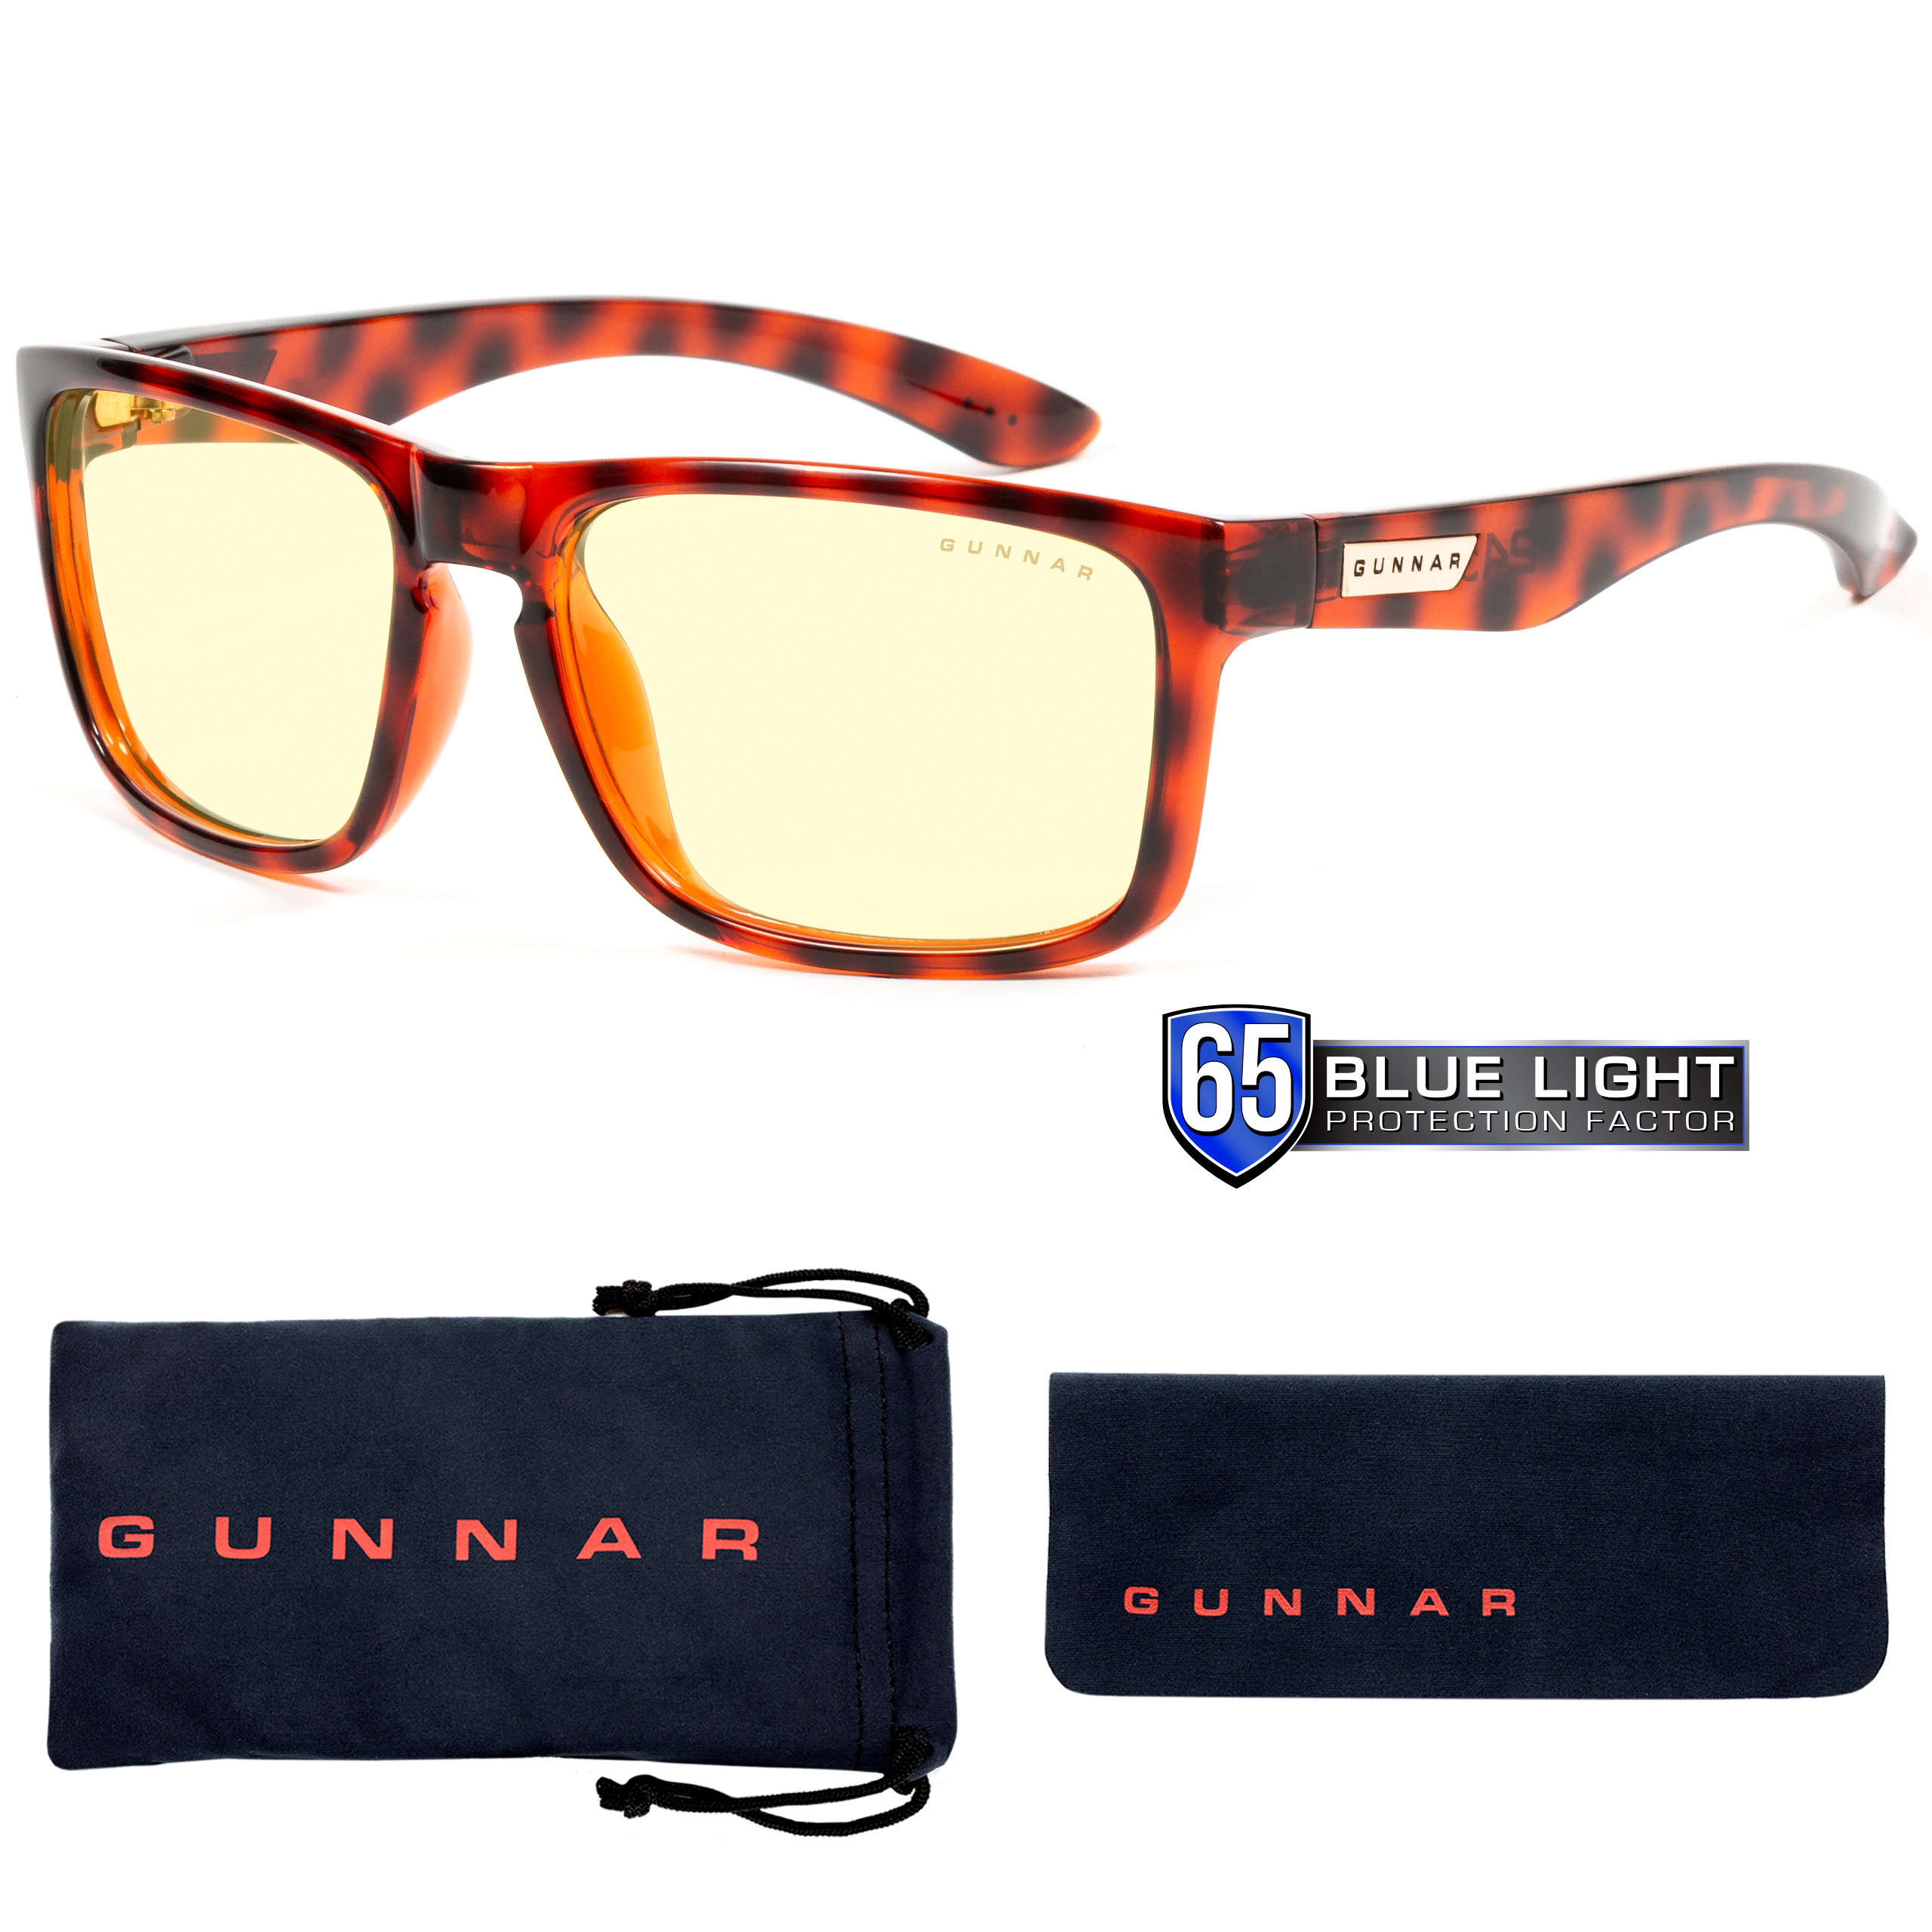 Gaming GUNNAR UV-Schutz, Tortoise Rahmen, Intercept, Amber Premium, Brille Tönung, Blaulichtfilter,